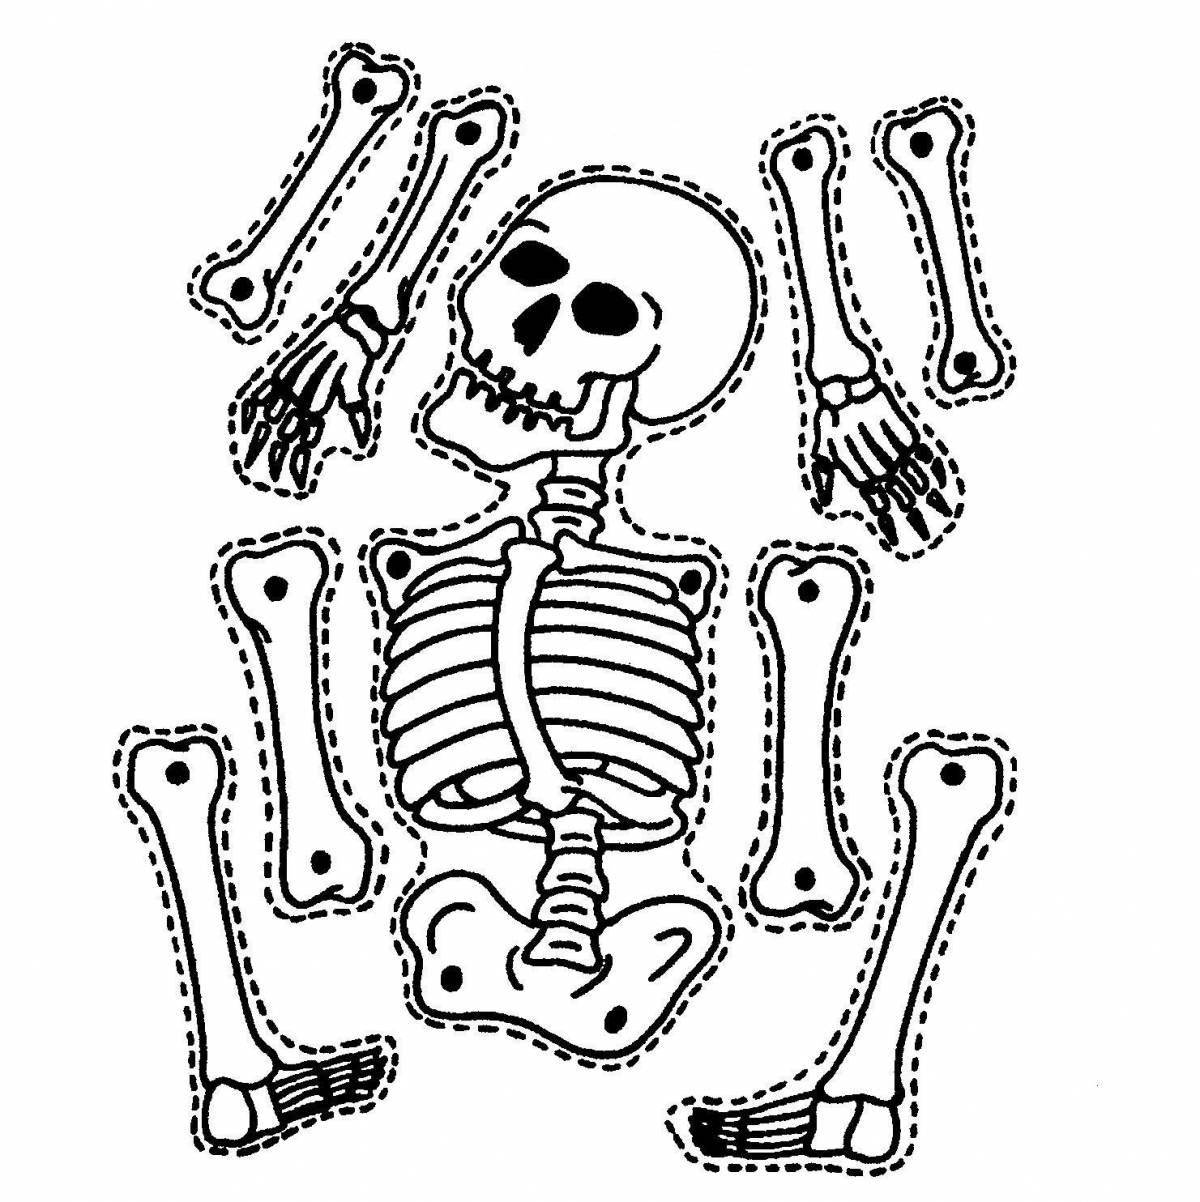 Human skeleton #13